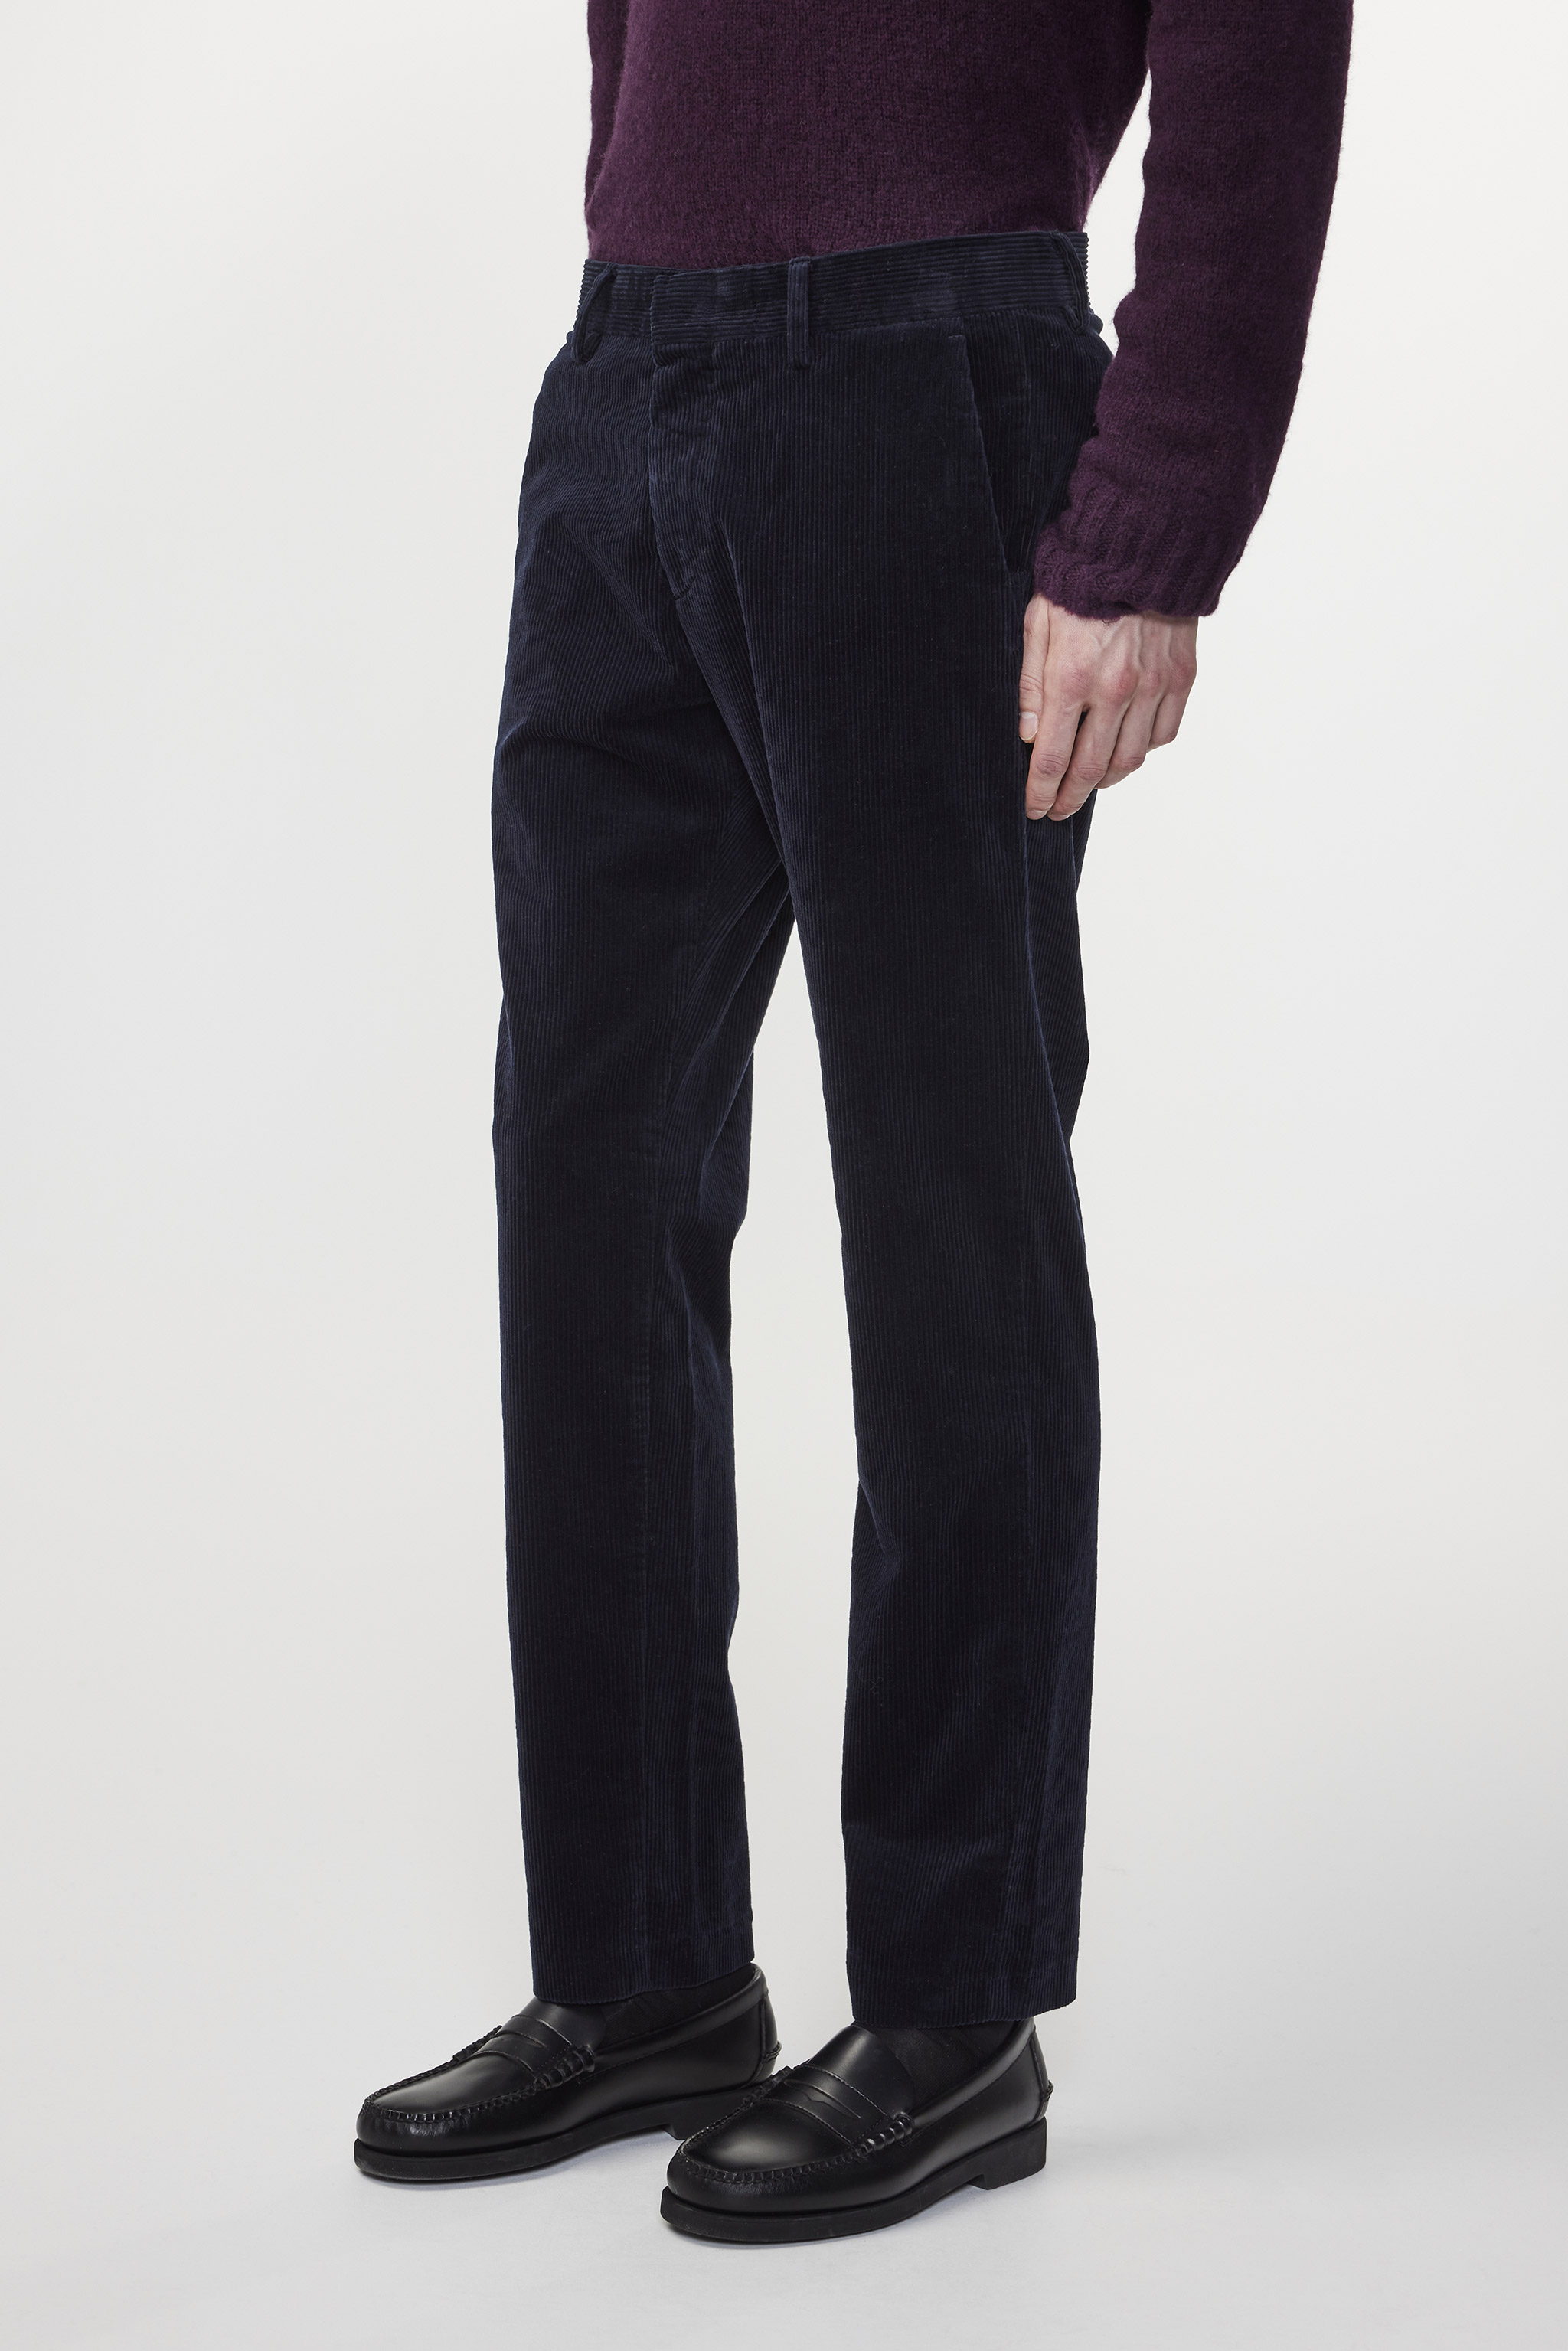 Slim Fit Black Velvet Dress Trousers | Buy Online at Moss